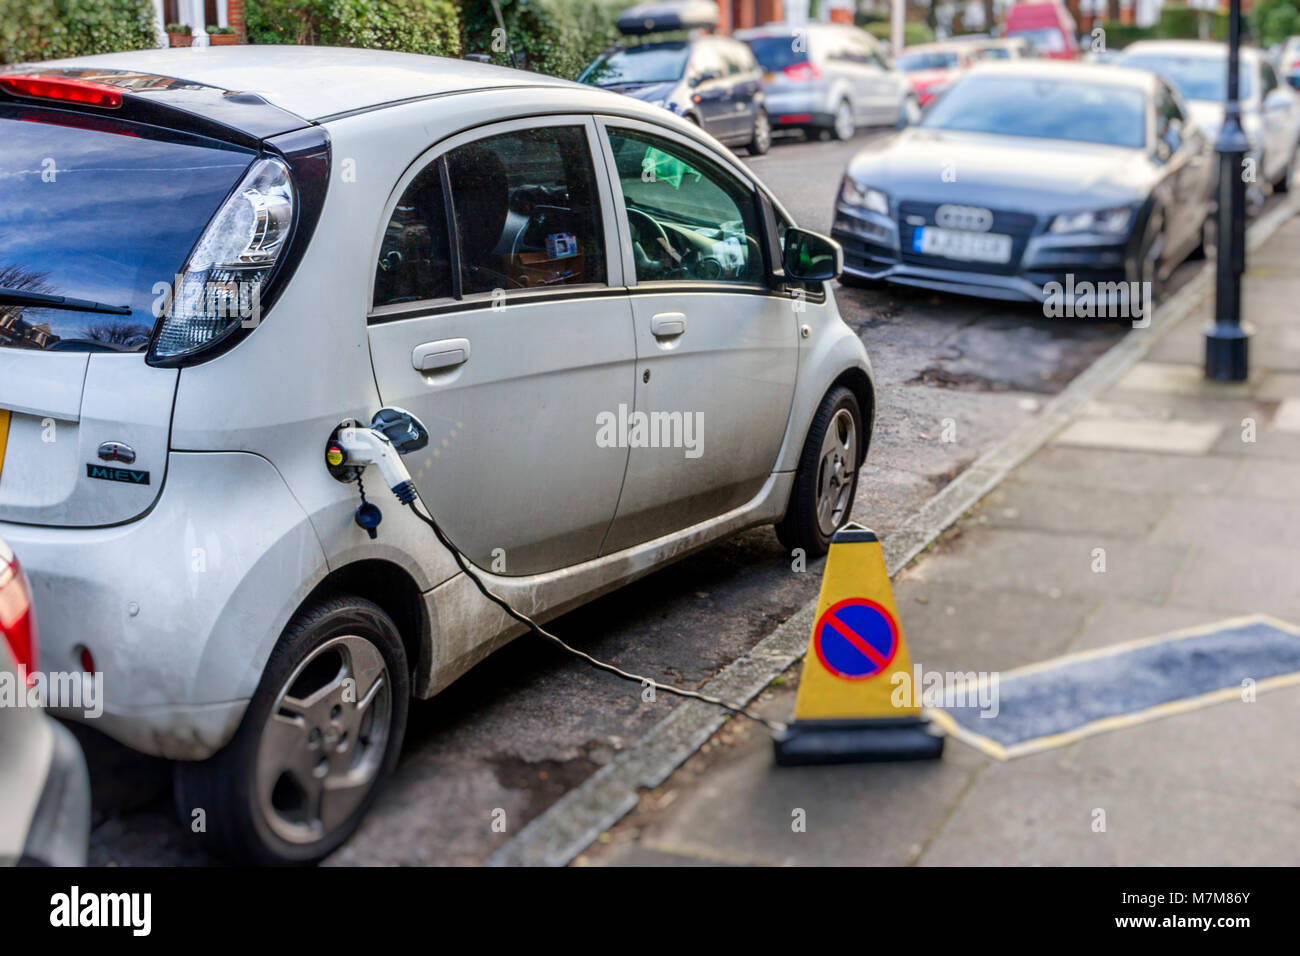 Eine elektrisch angetriebene Auto am Straßenrand in einem Wohnviertel im Norden Londons geladen wird, Großbritannien Stockfoto